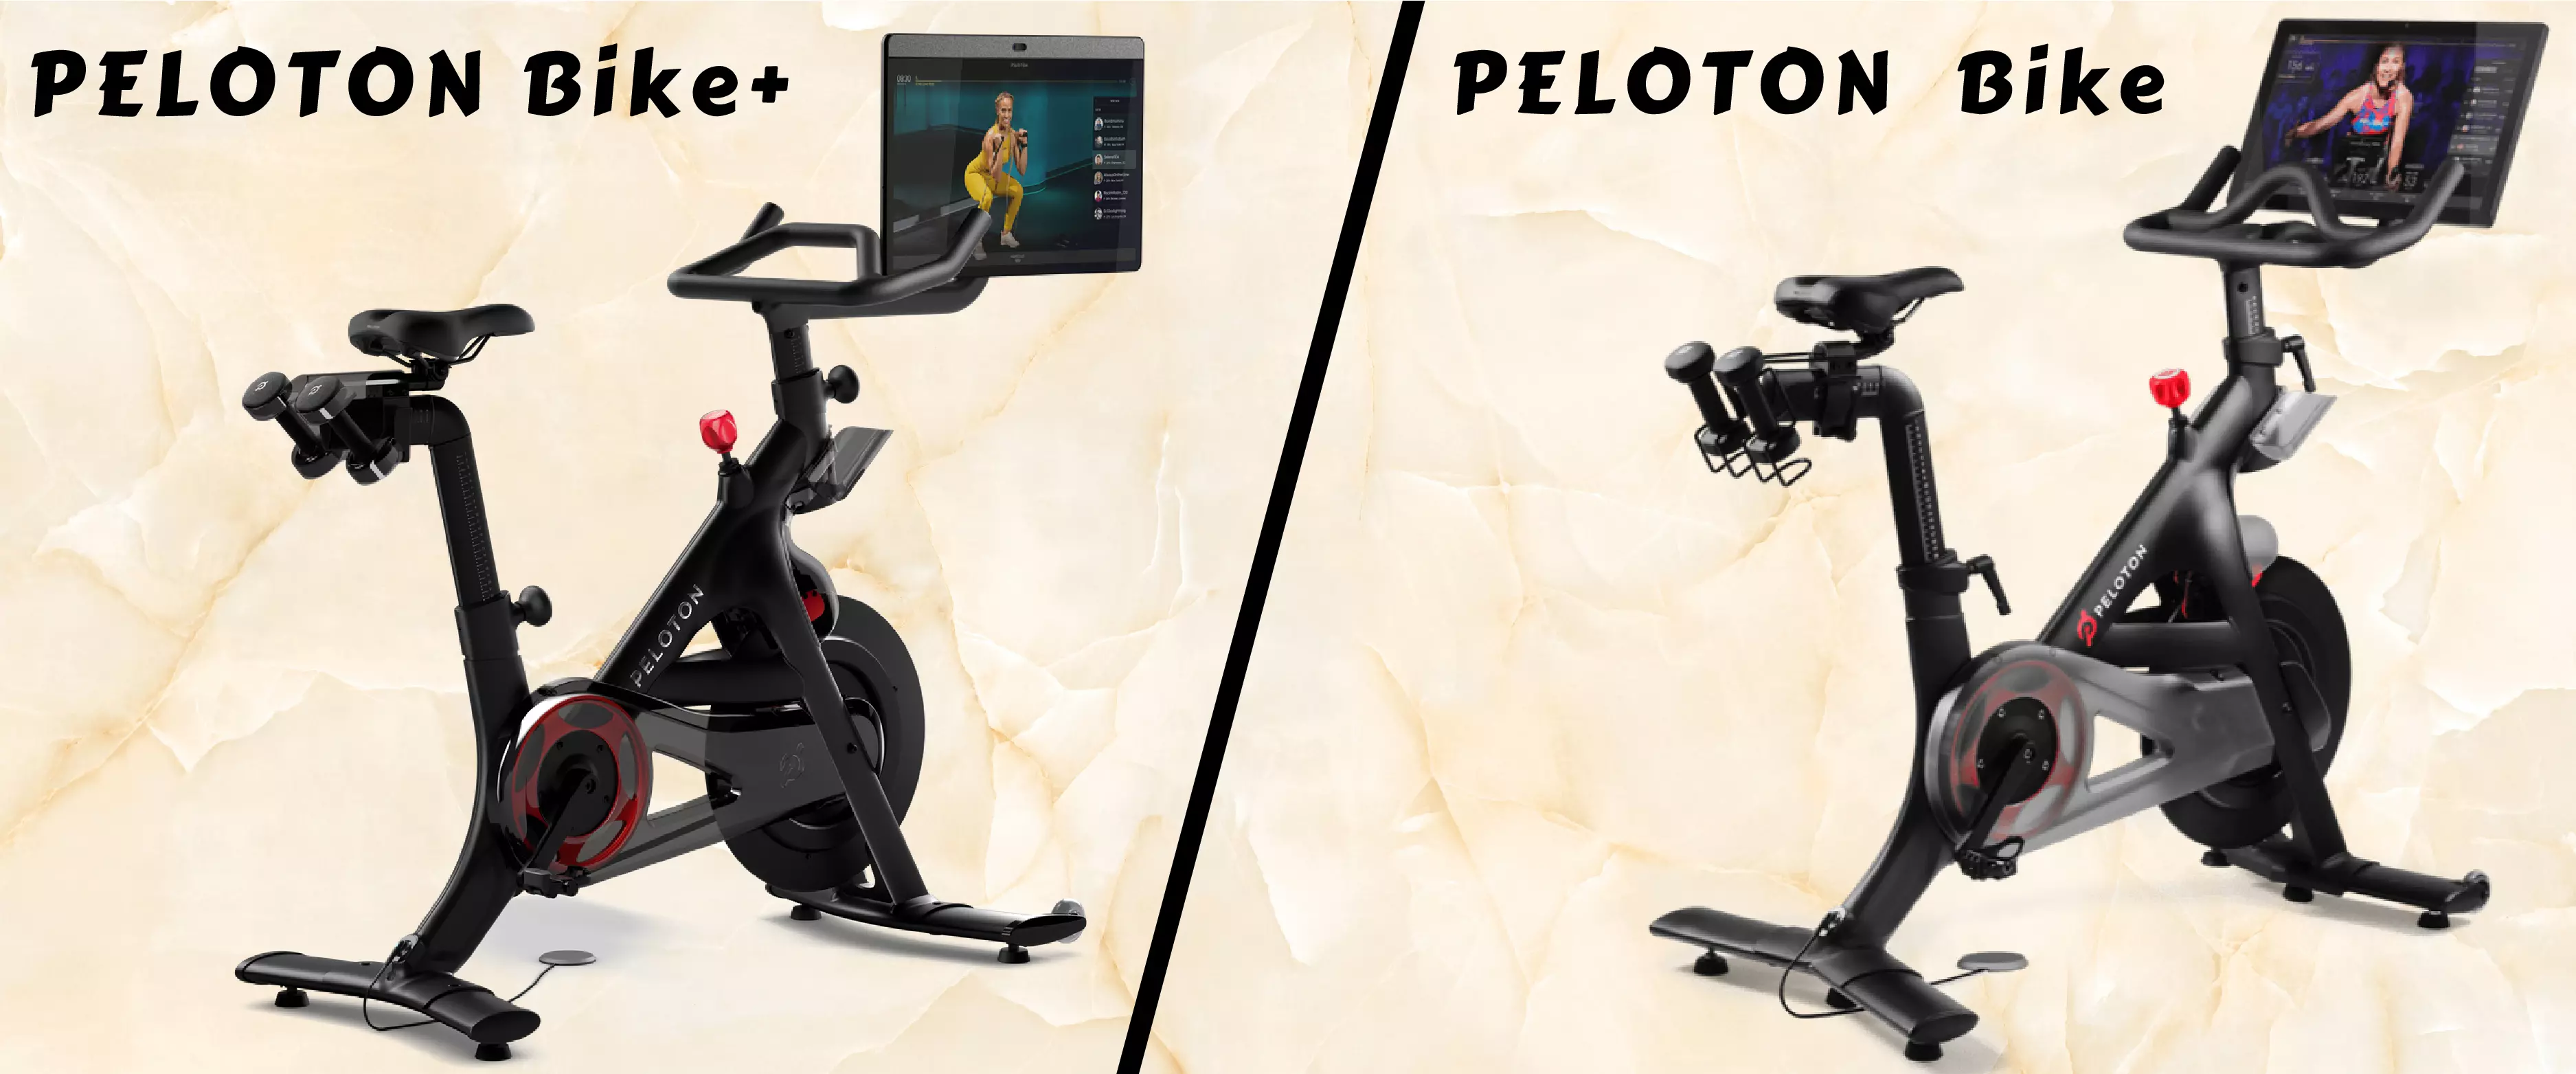 PELOTON Bike VS Peloton Bike plus